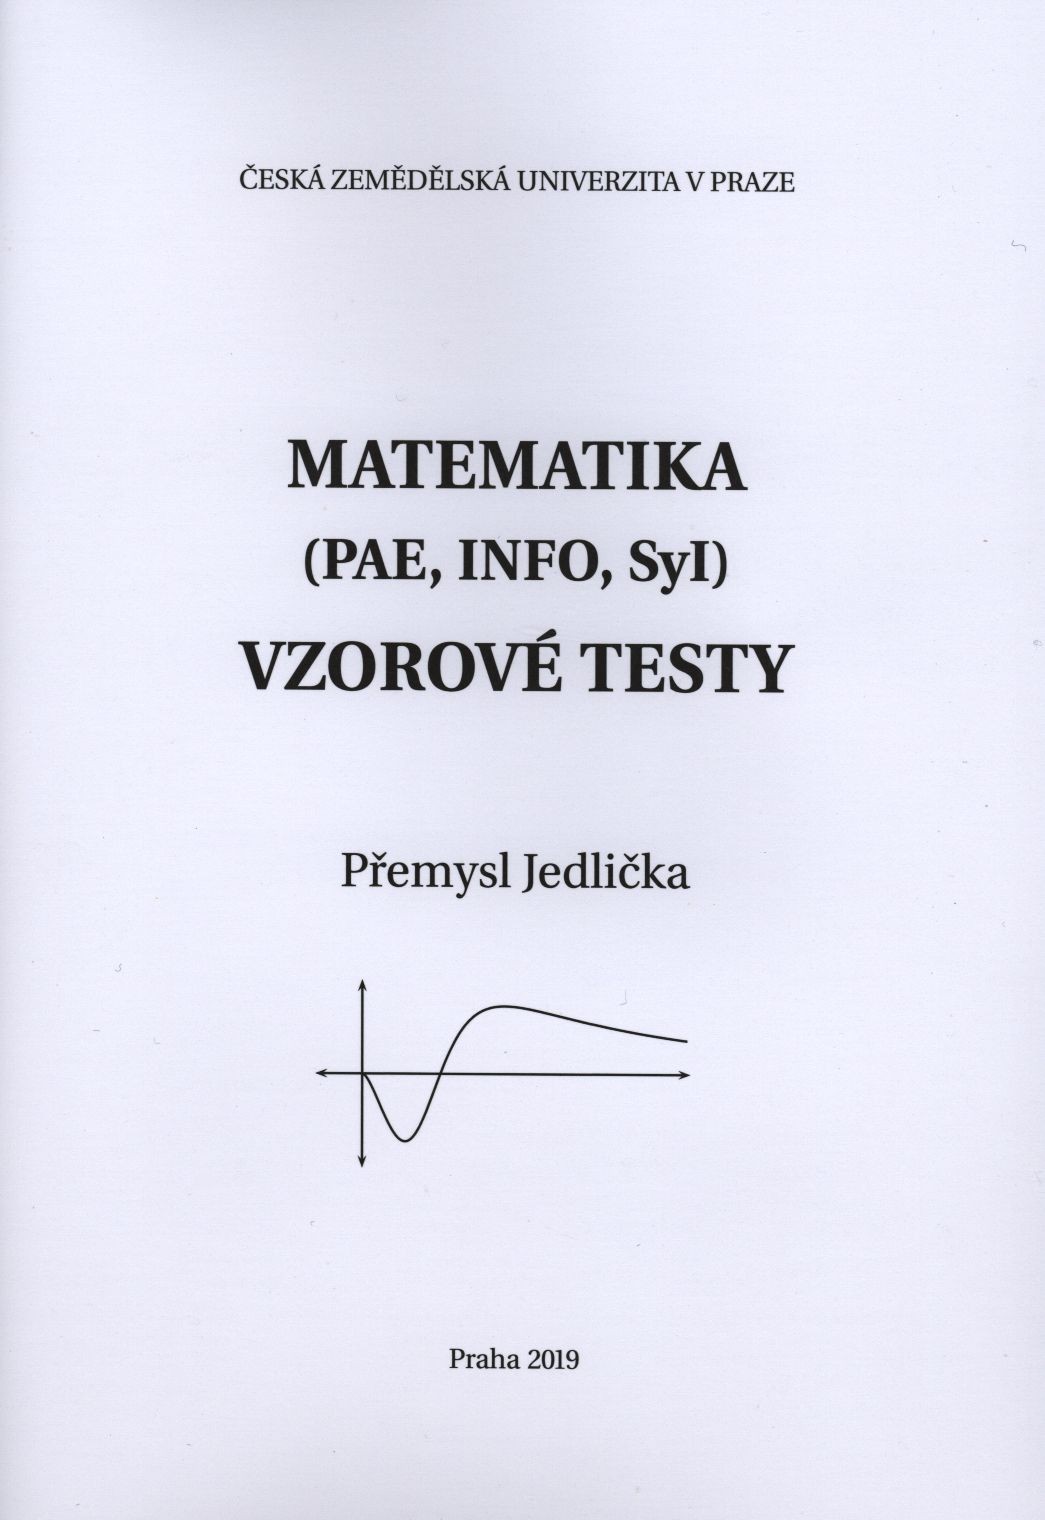 Matematika (PAE, INFO, Syl) - vzorové testy, 305